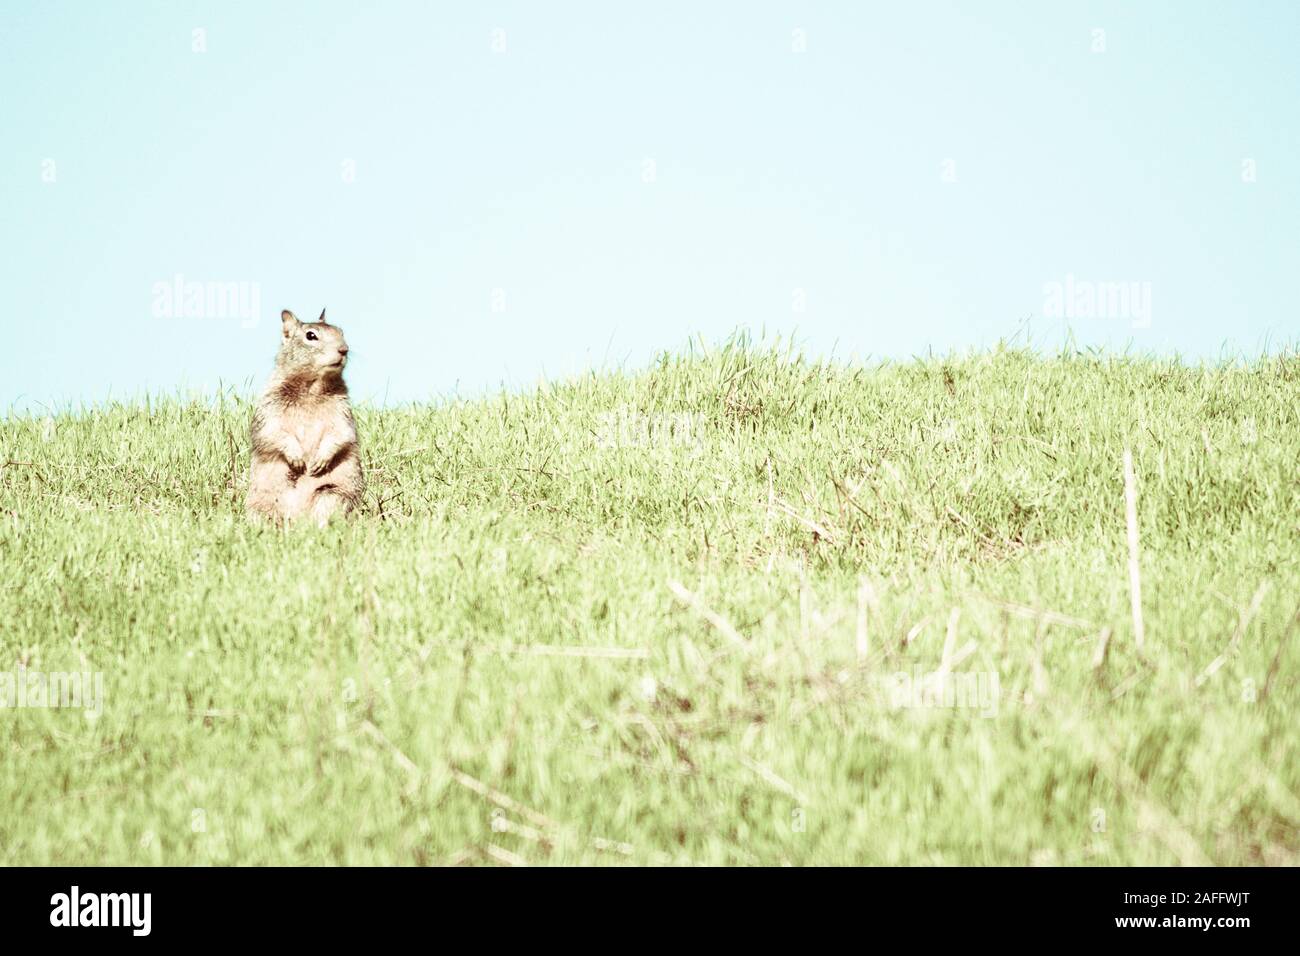 La massa della California lo scoiattolo seduto sulle zampe posteriori con zampe anteriori sollevate guardando al lato. Cielo blu e verde erba. Foto Stock